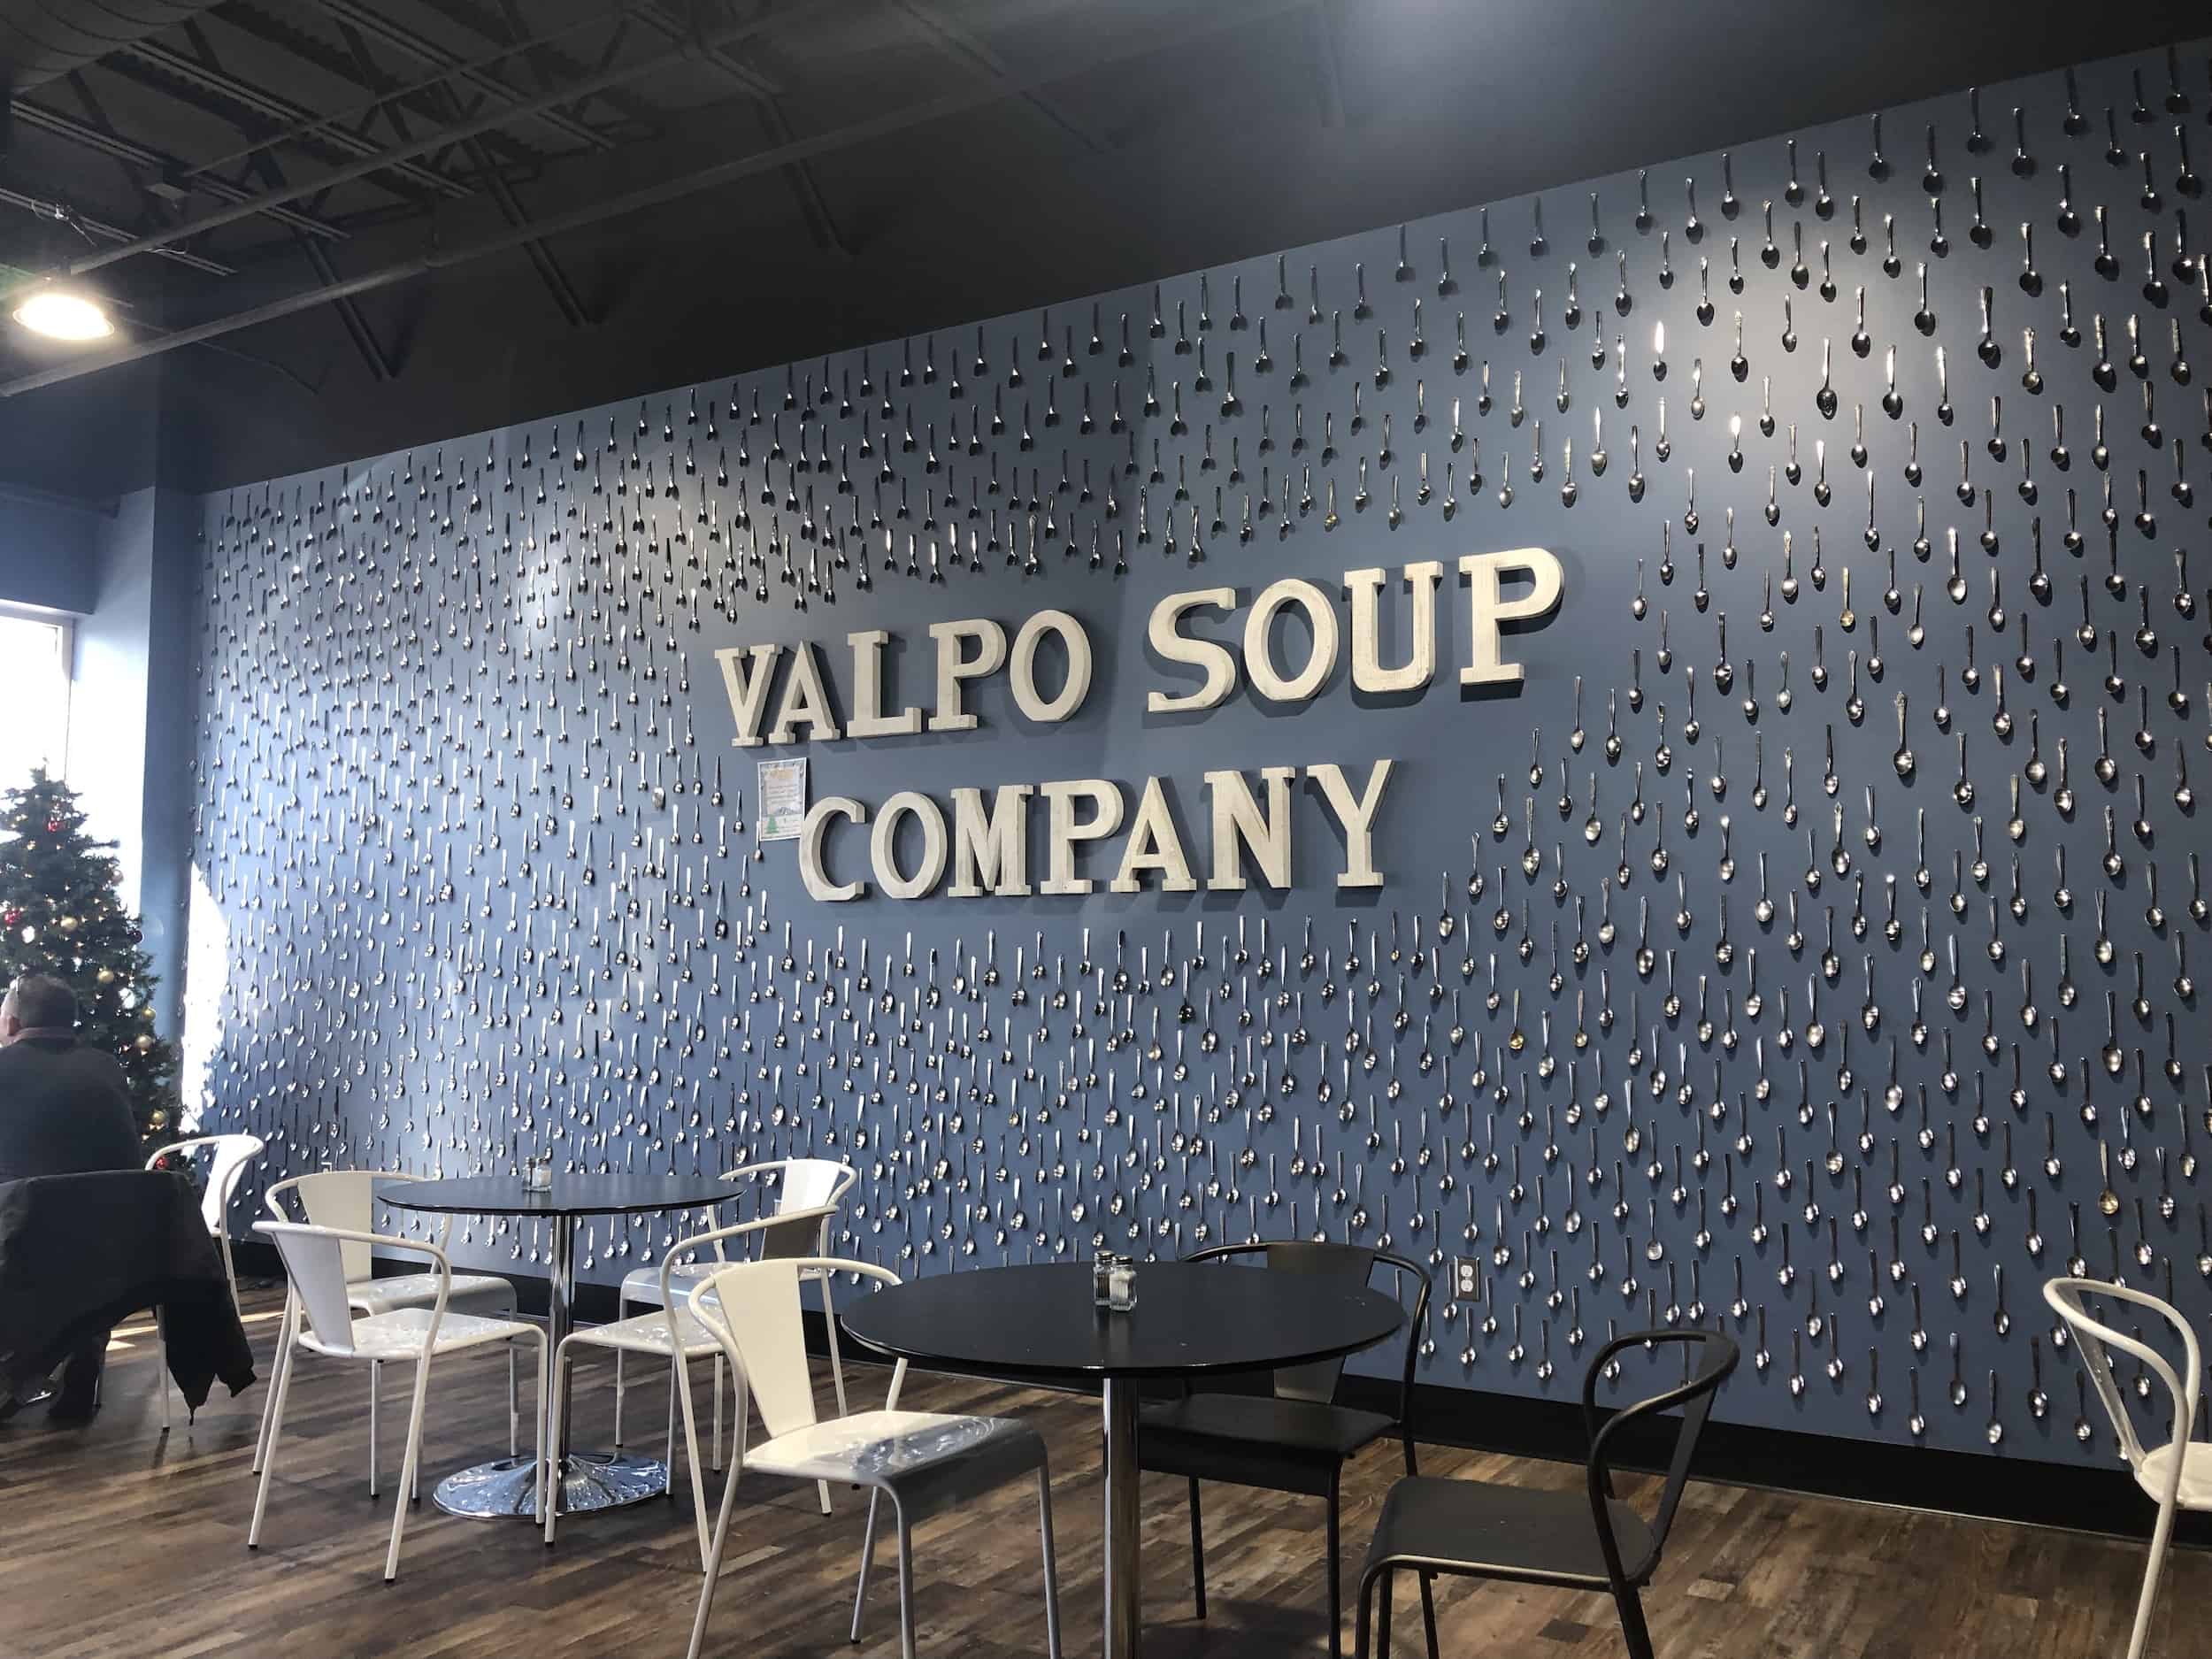 Valpo Soup Company in Valparaiso, Indiana